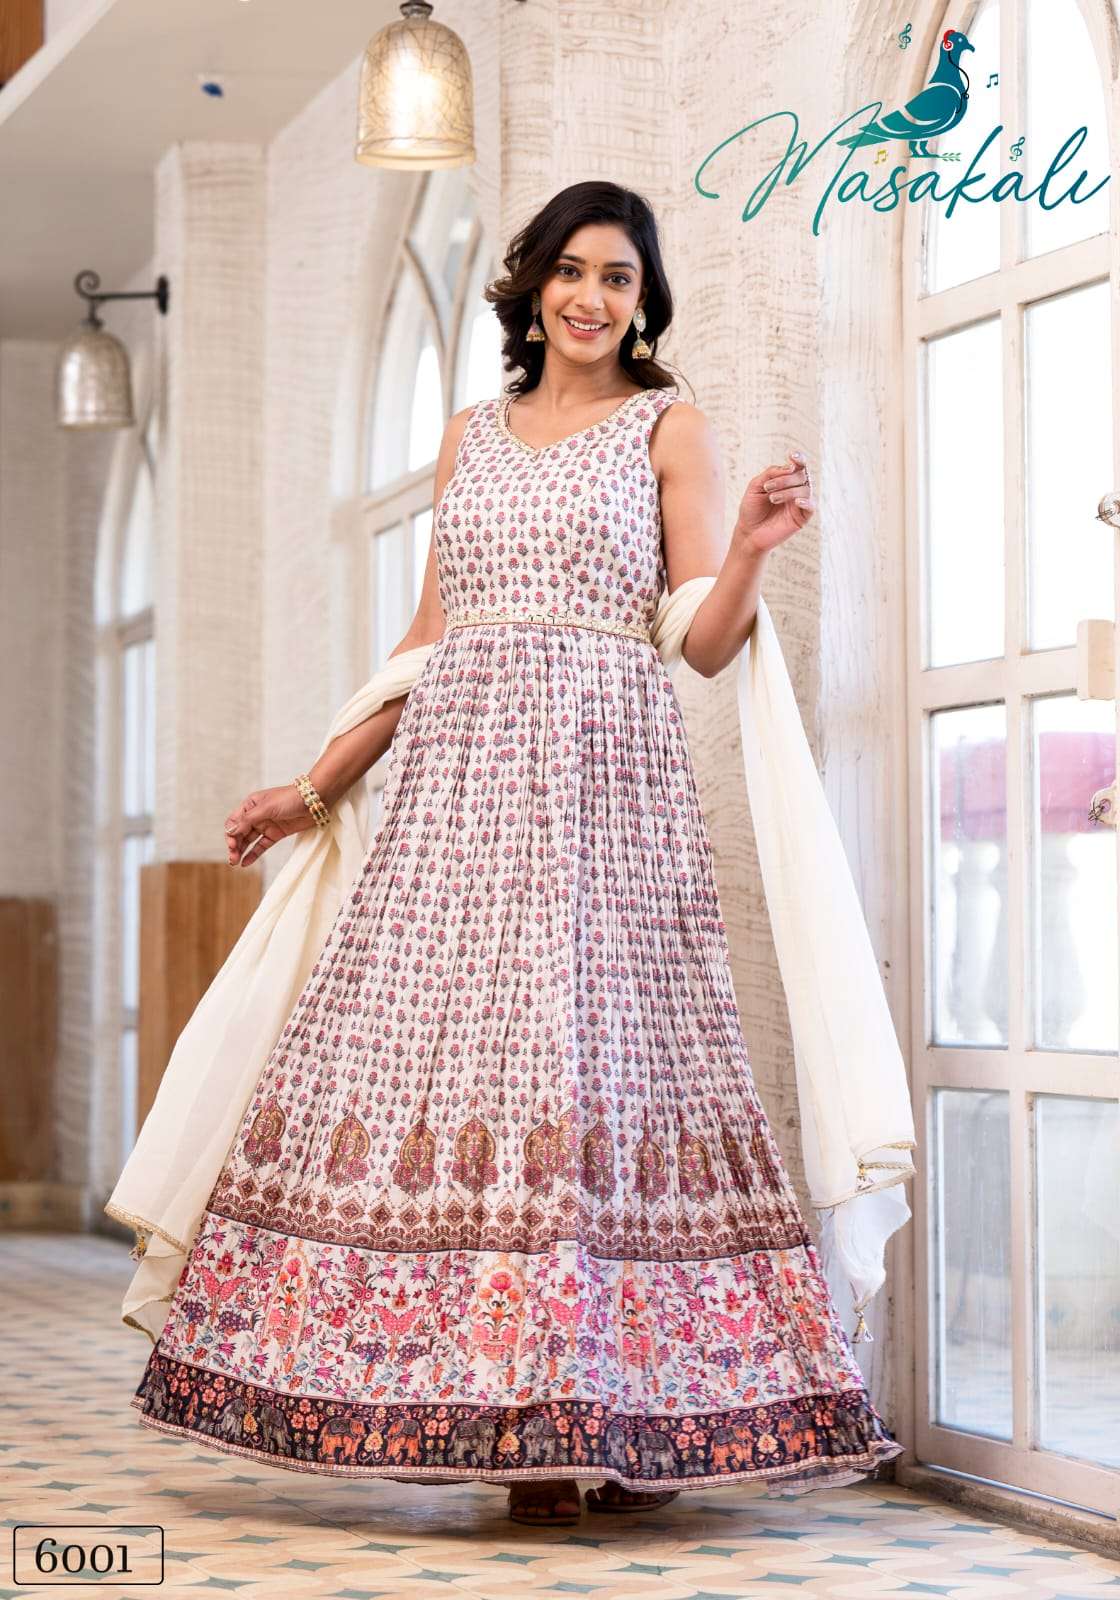 Masakali Vol 6 Designer Gown Dupatta Set Suppliers Wedding Collection